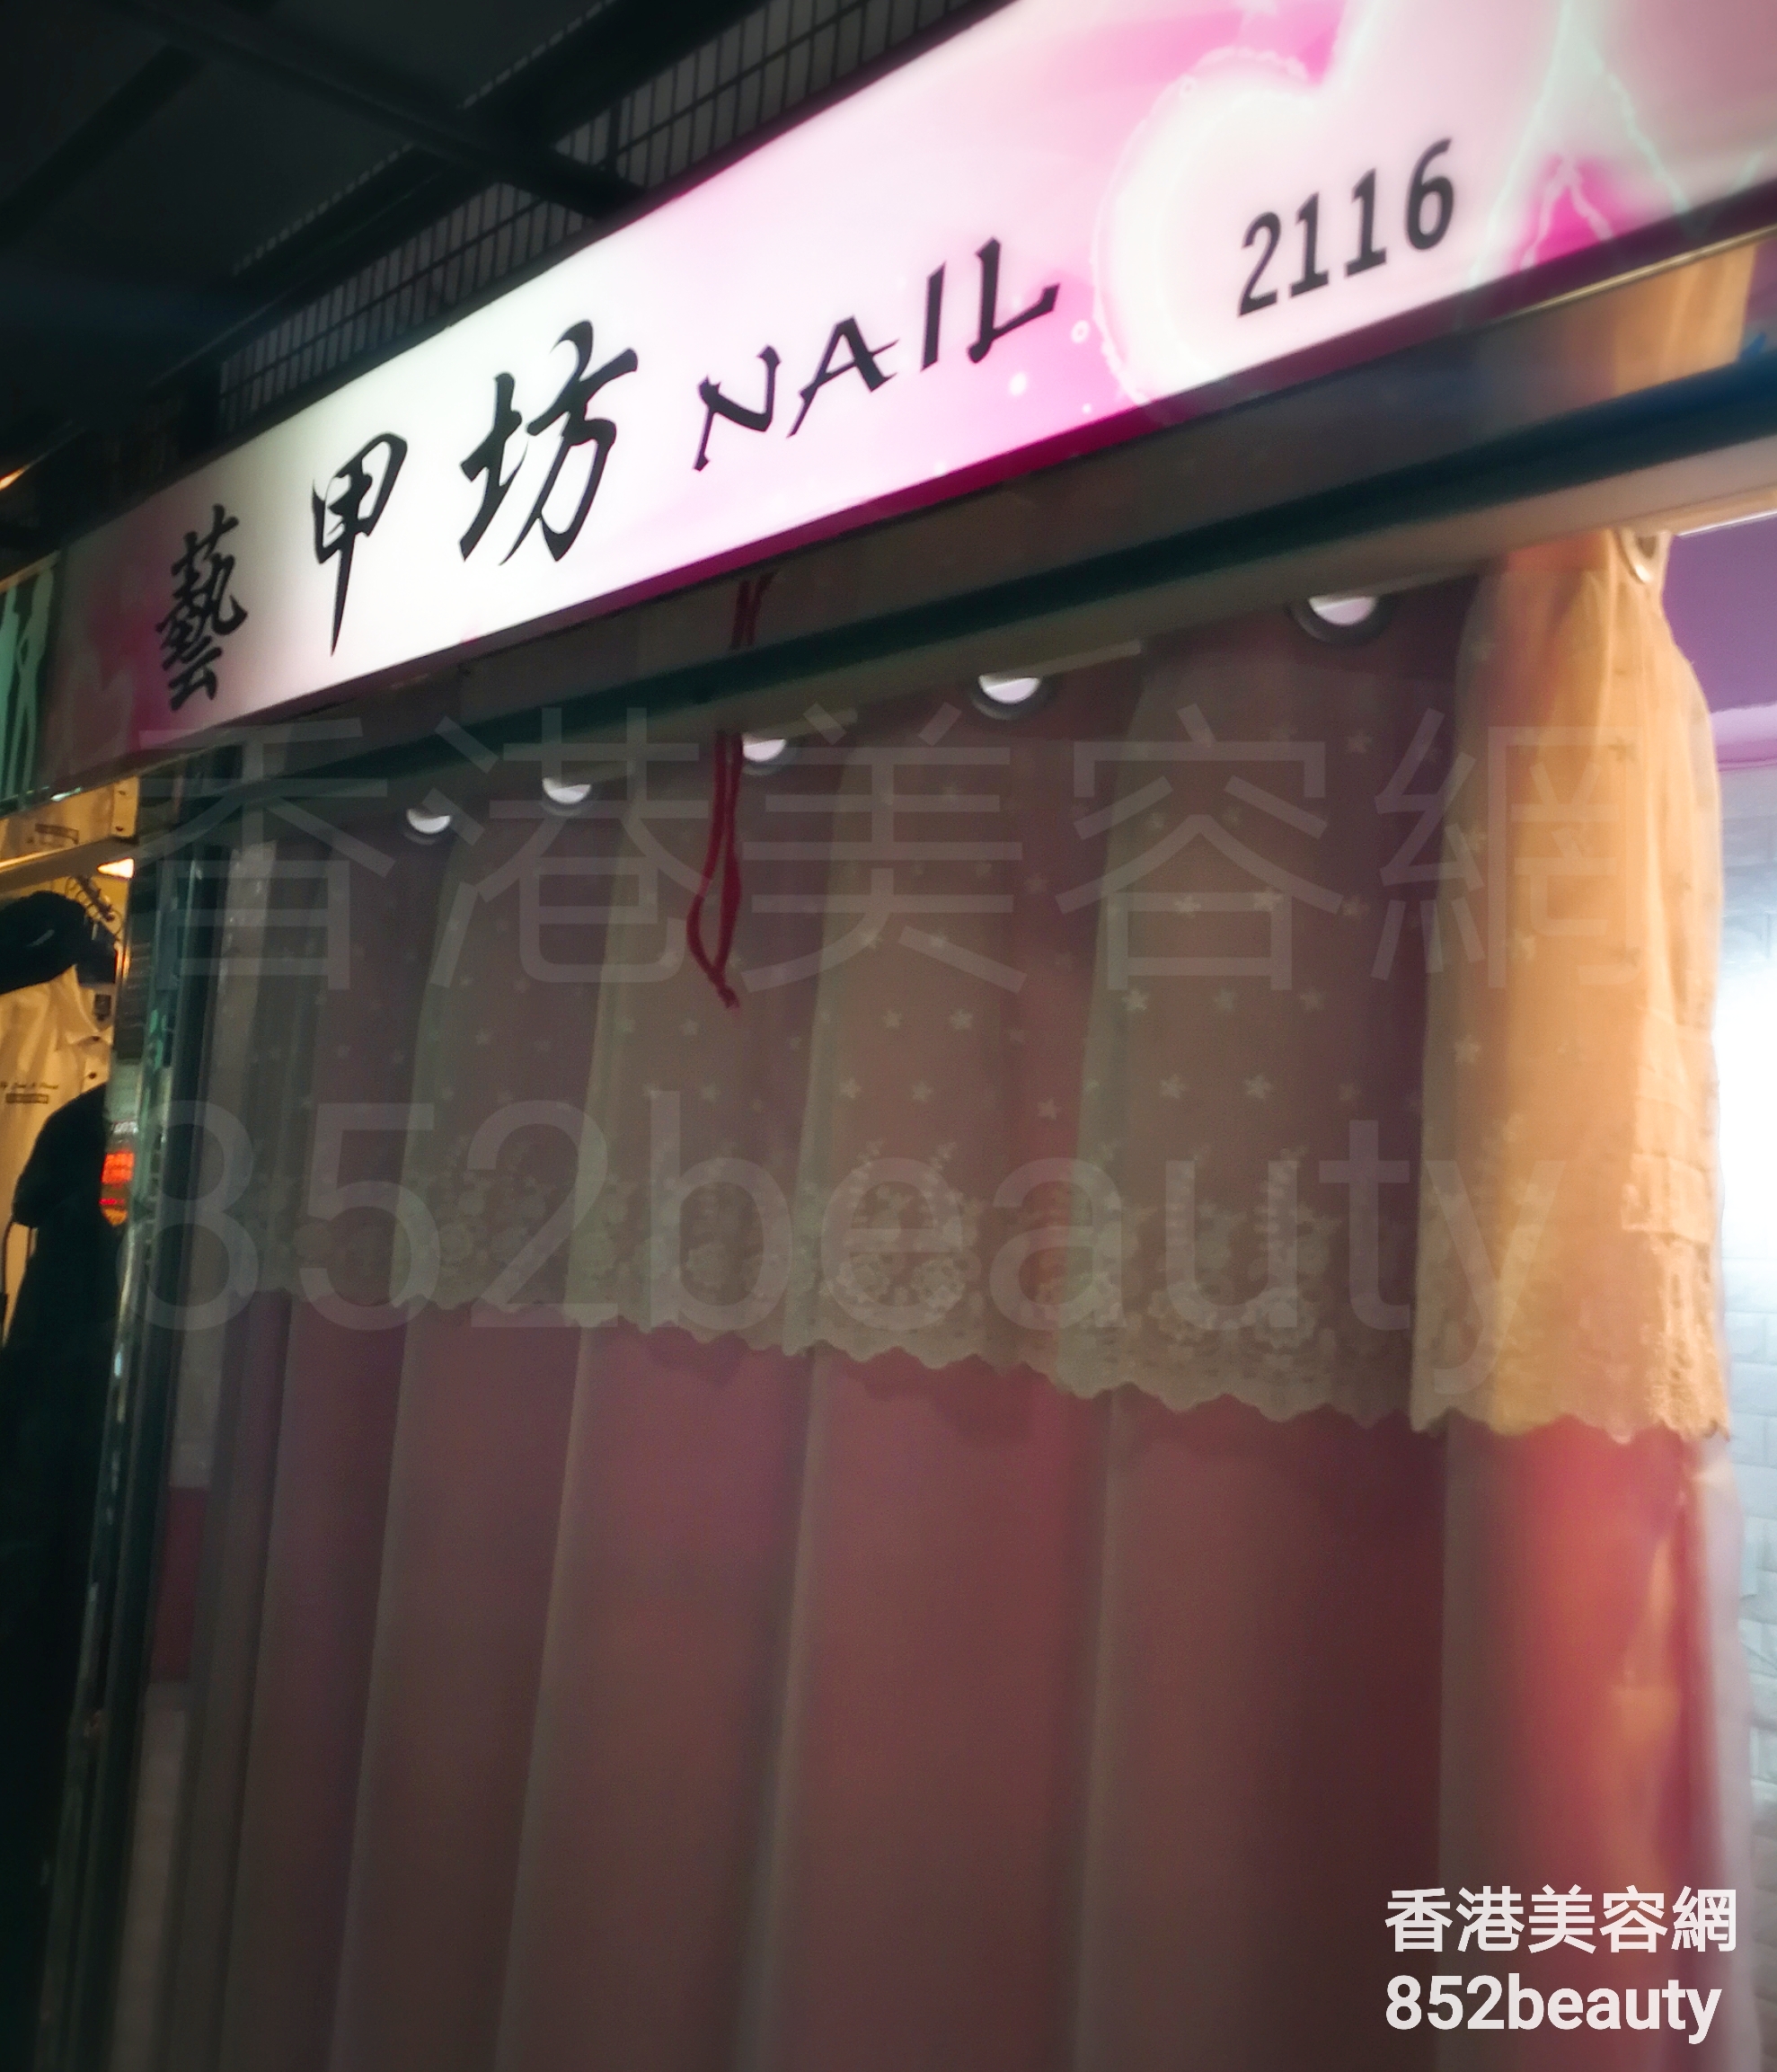 香港美容網 Hong Kong Beauty Salon 美容院 / 美容師: 藝甲坊 NAIL